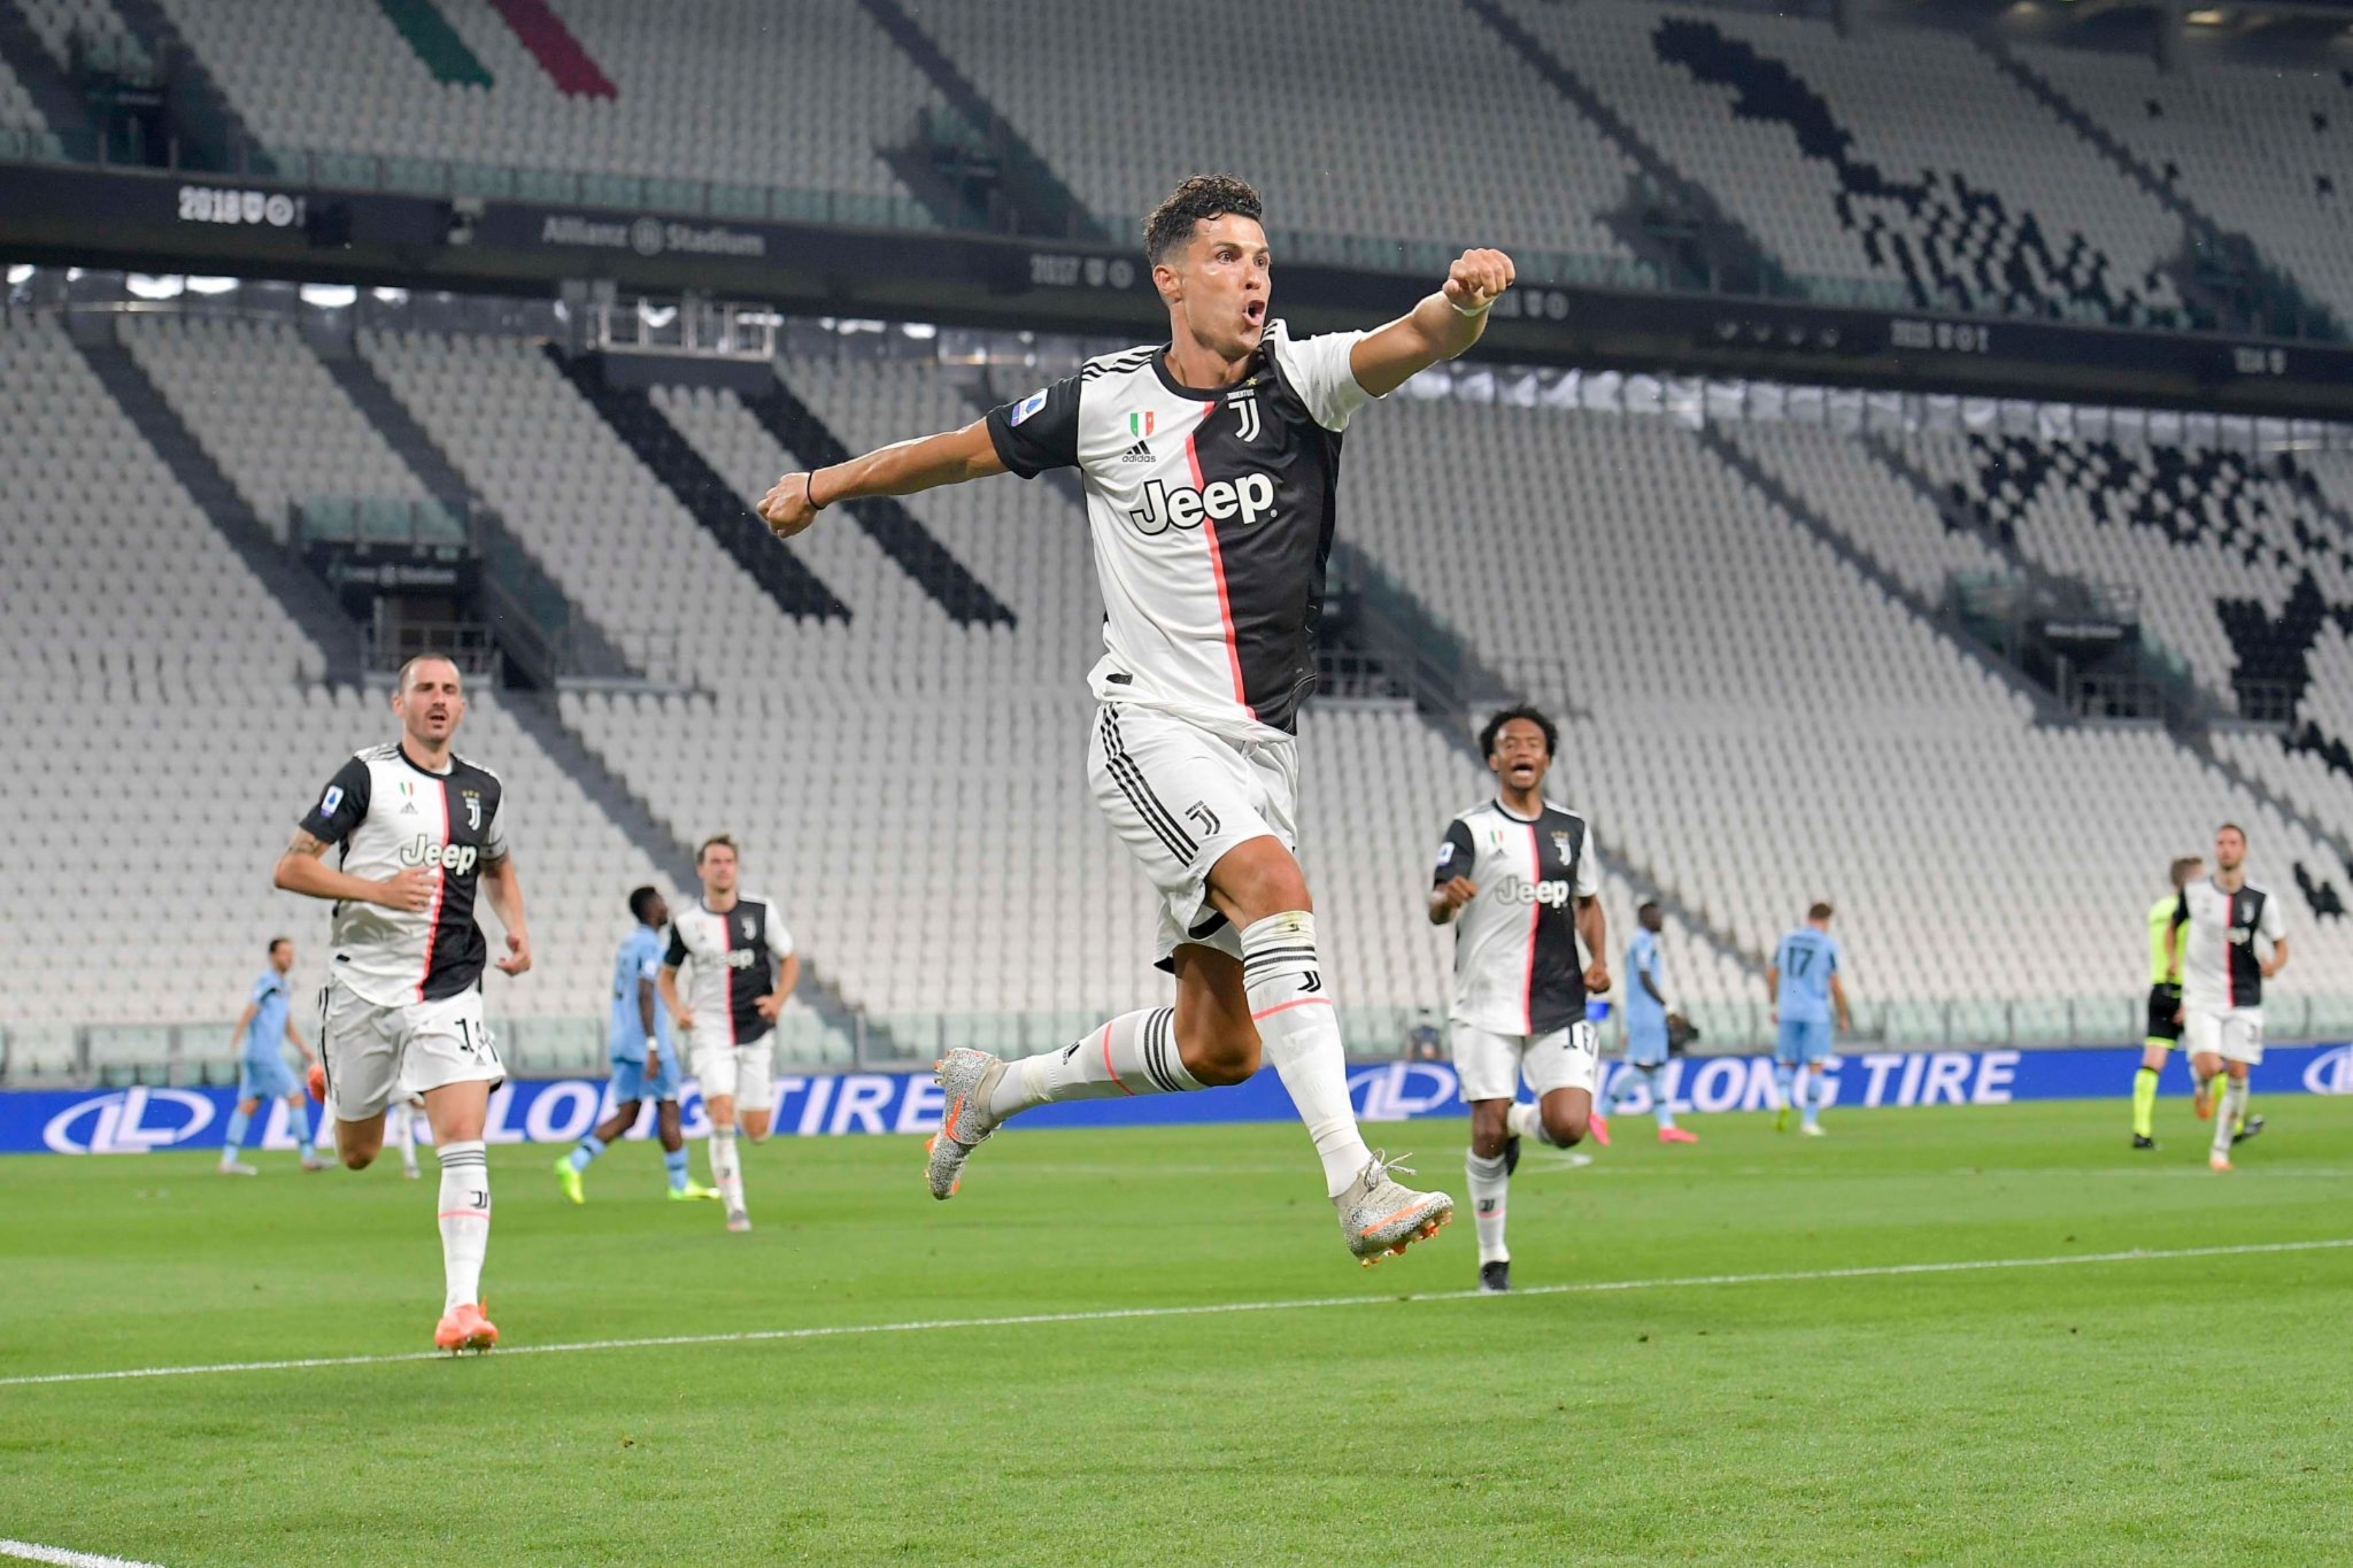 یوونتوس - سری آ - Serie A - Juventus - گلزنی مقابل لاتزیو